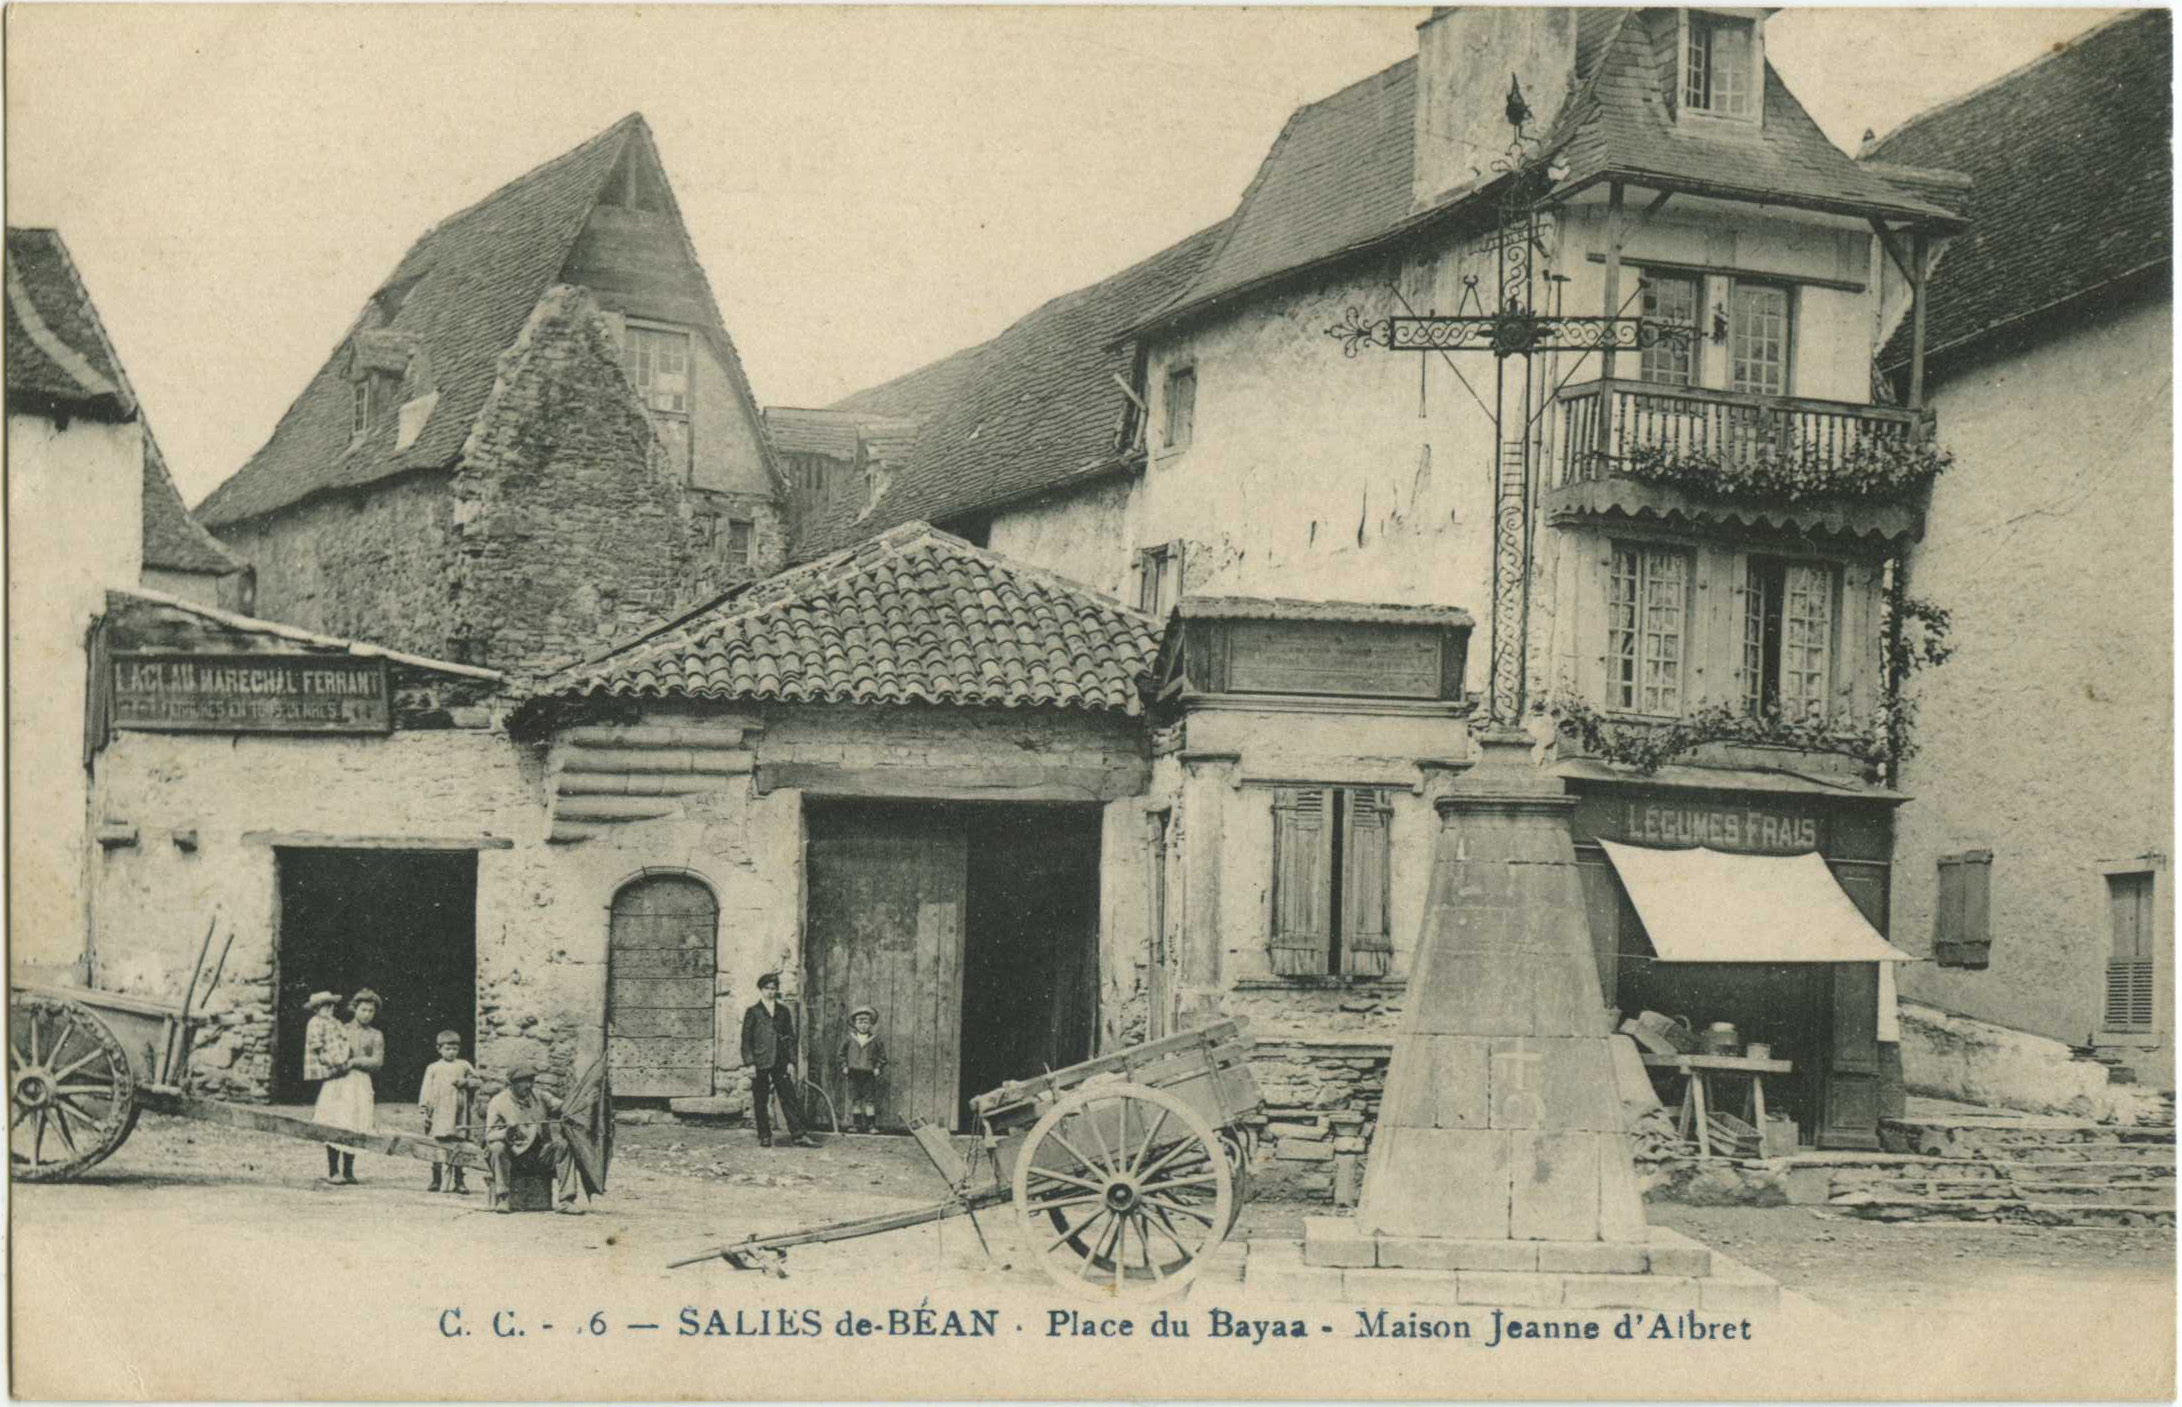 Salies-de-Béarn - Place du Bayaa - Maison Jeanne d'Albret